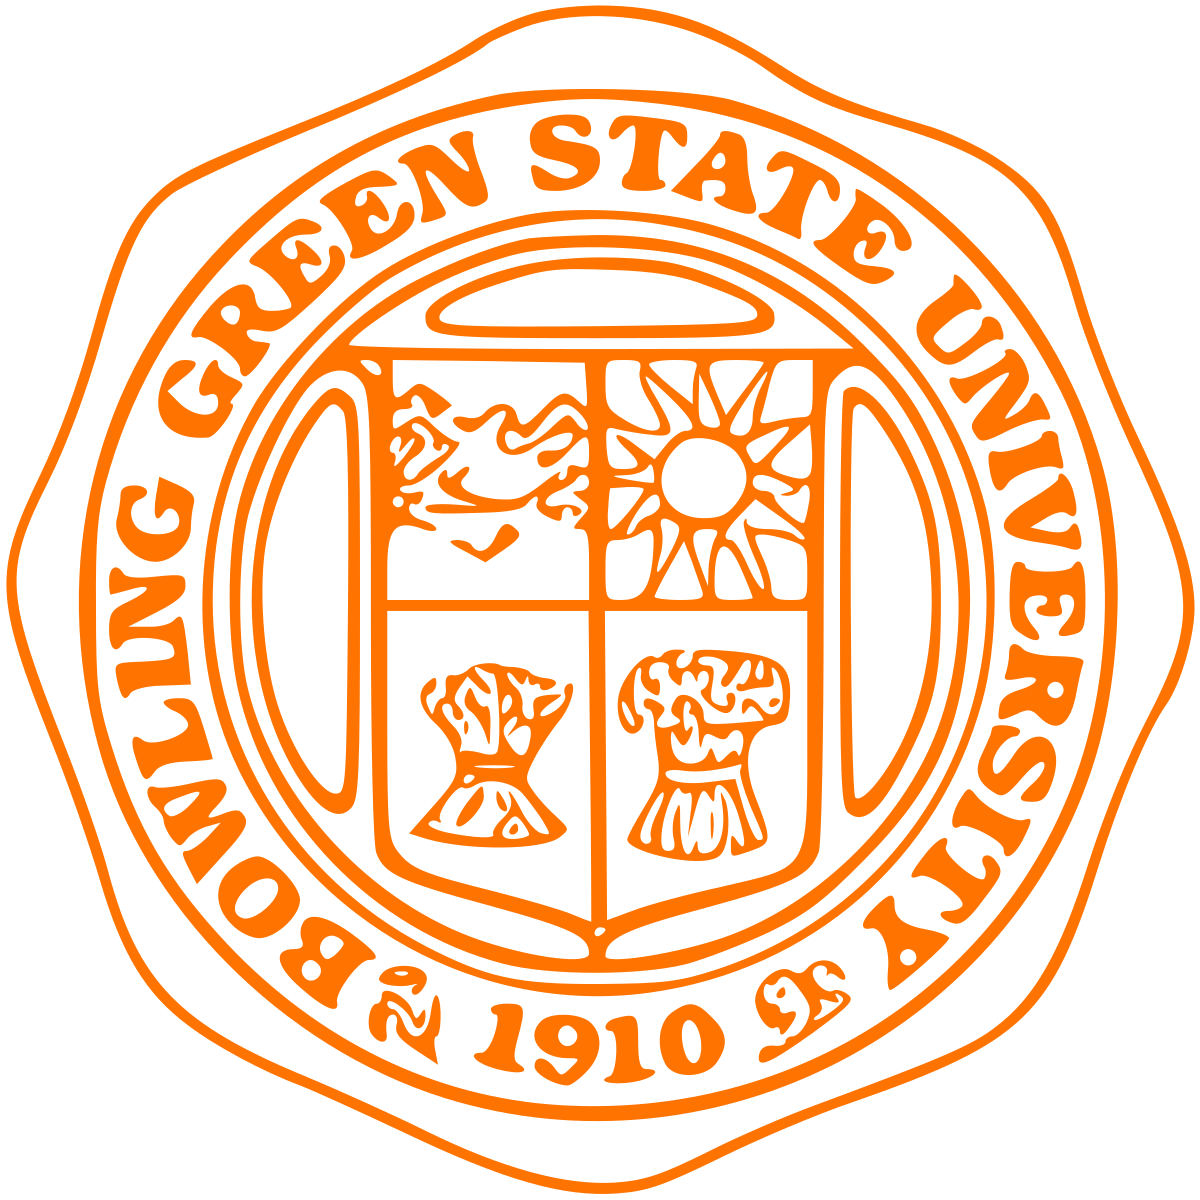 Bowling Green State University - Wikipedia